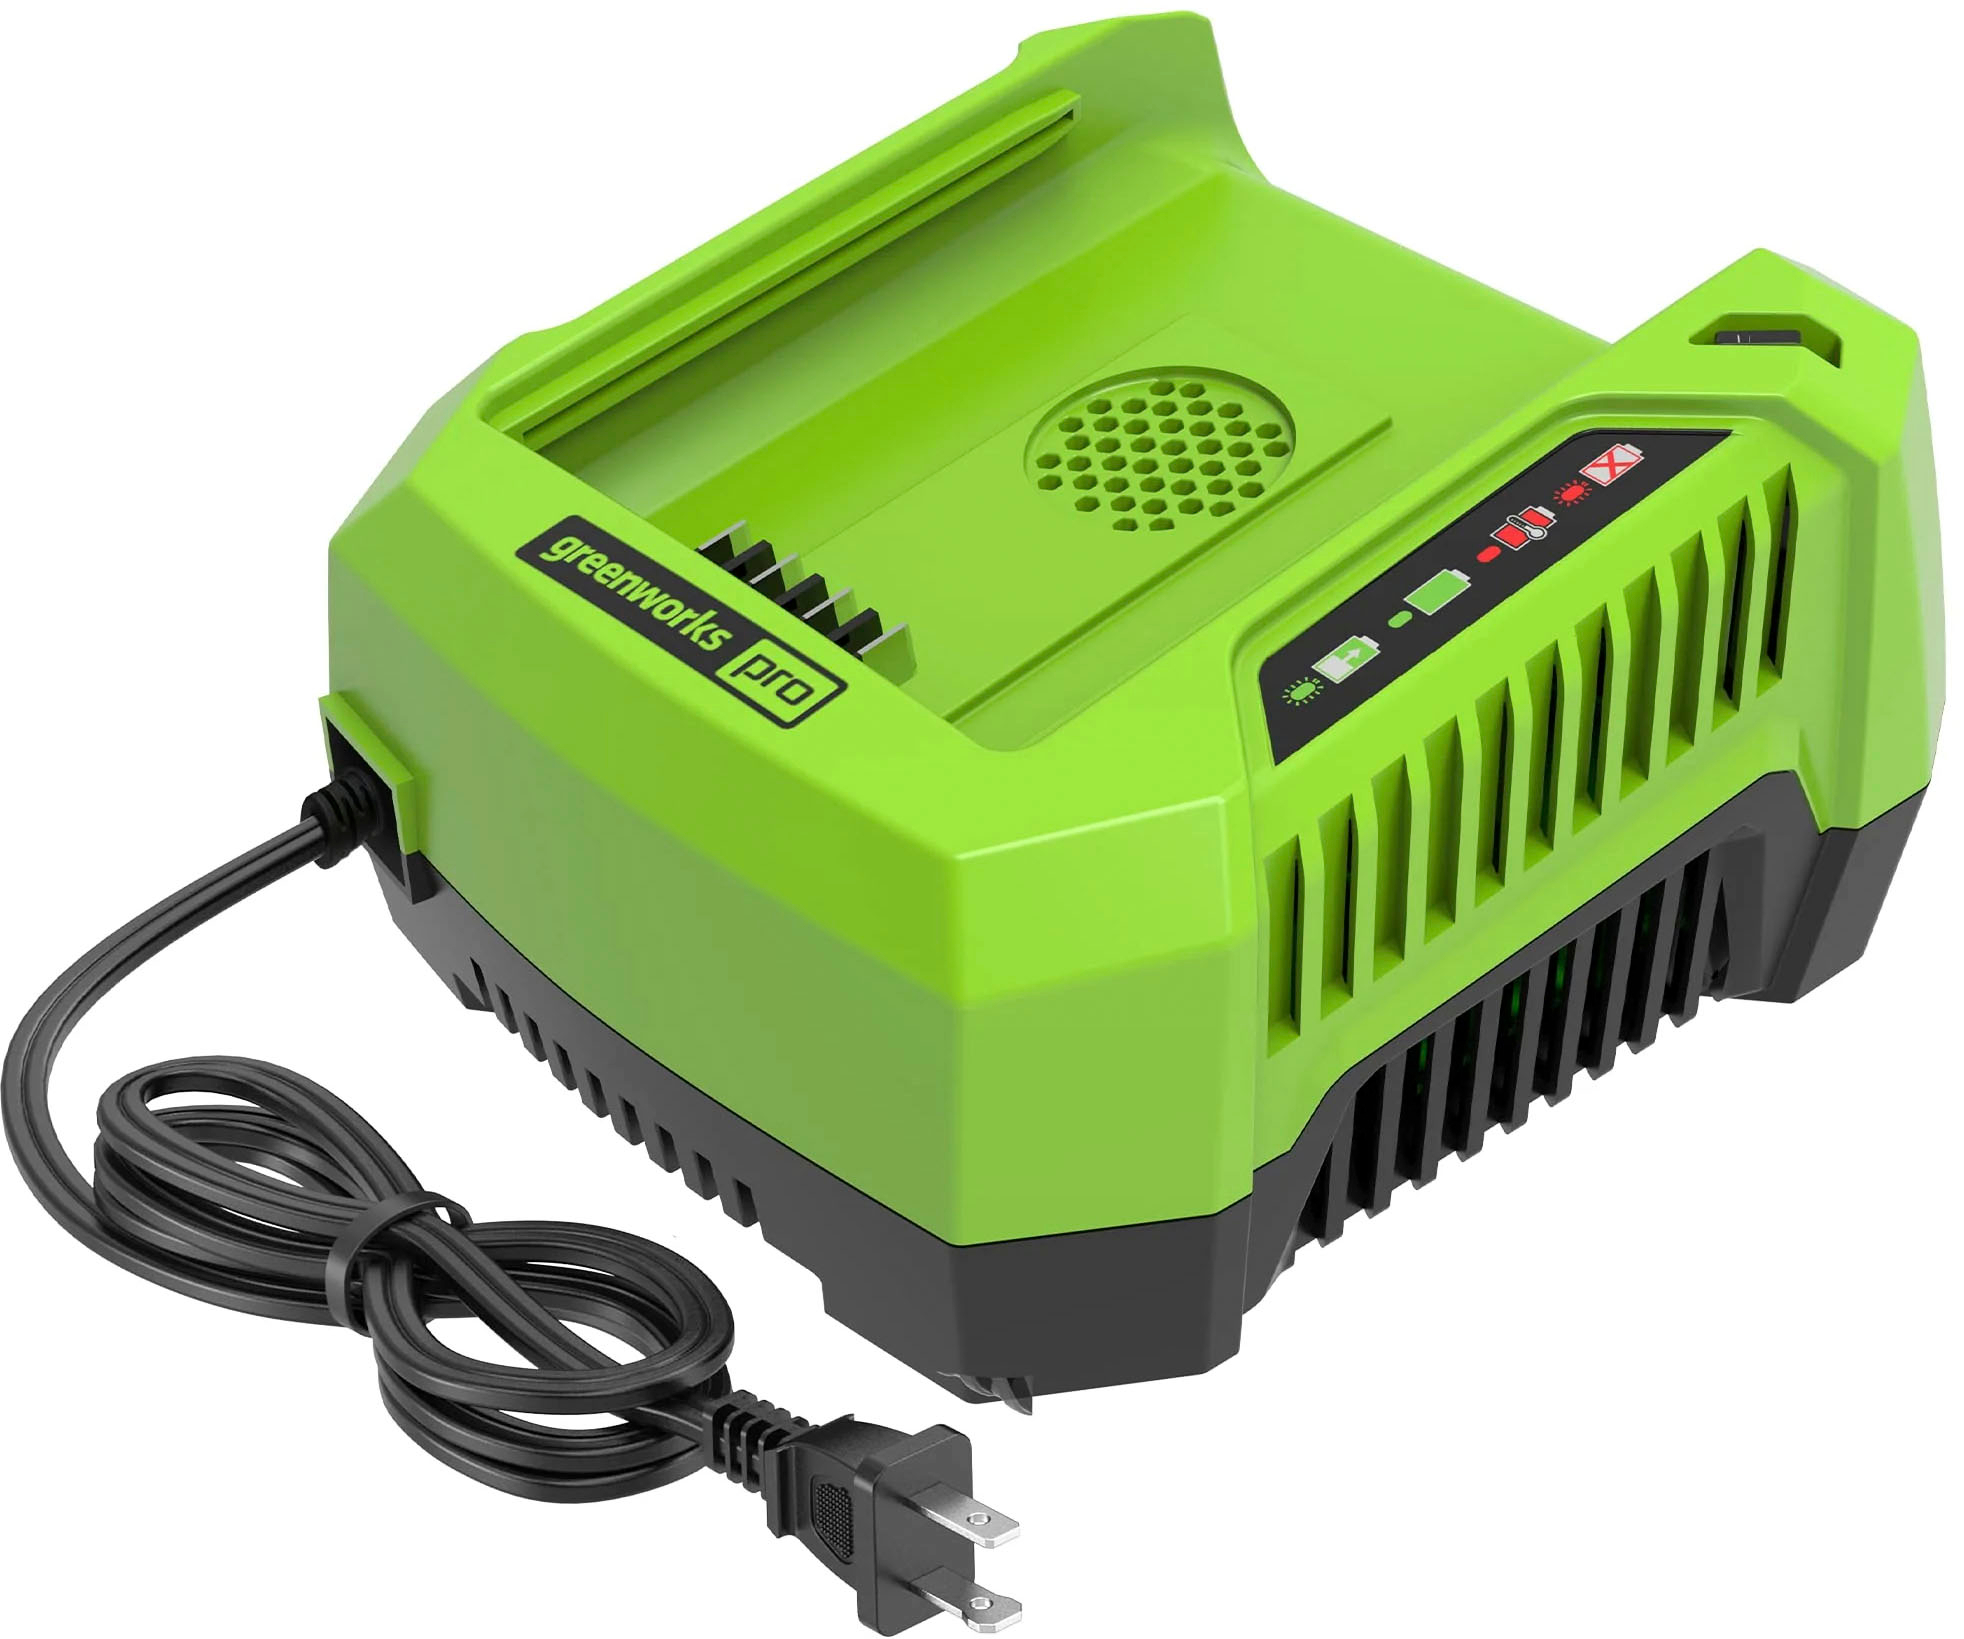 Greenworks - 80 Volt Pro Rapid Battery Charger - Black/Green